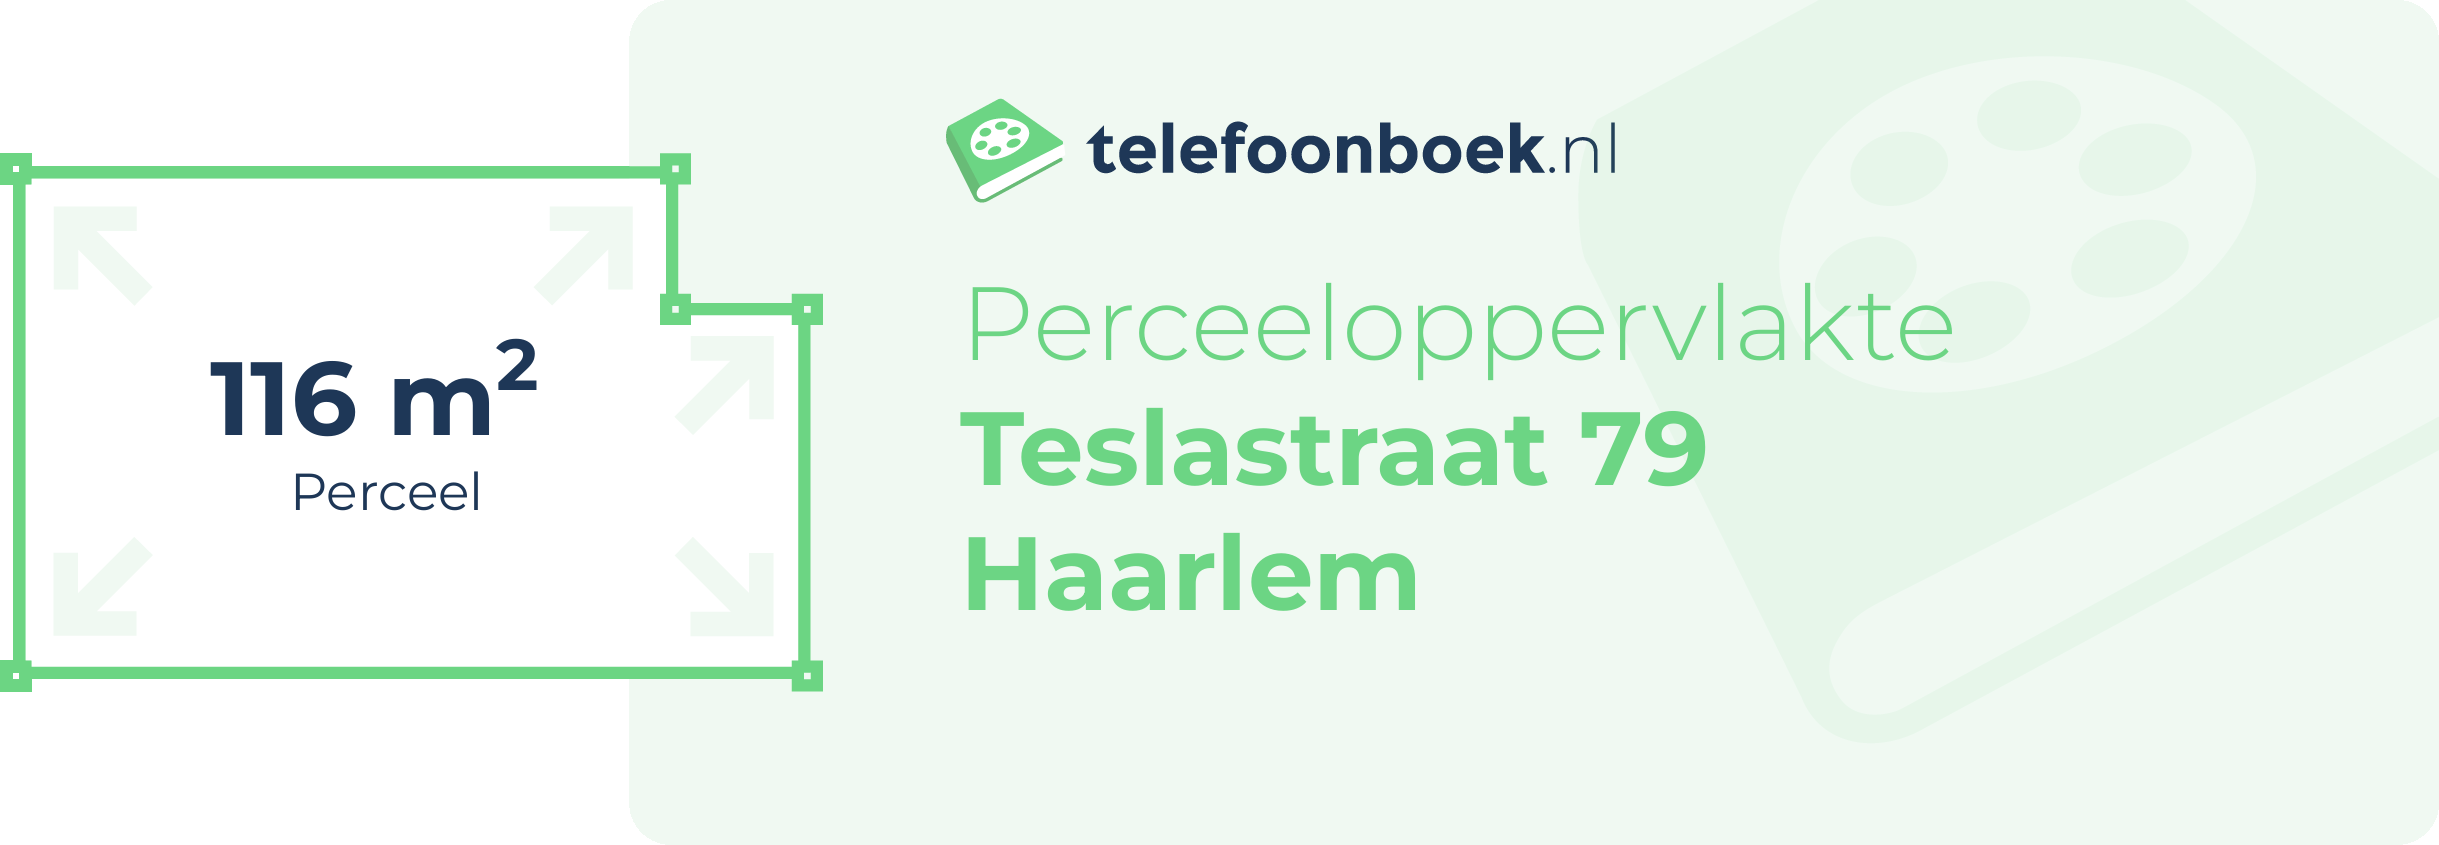 Perceeloppervlakte Teslastraat 79 Haarlem